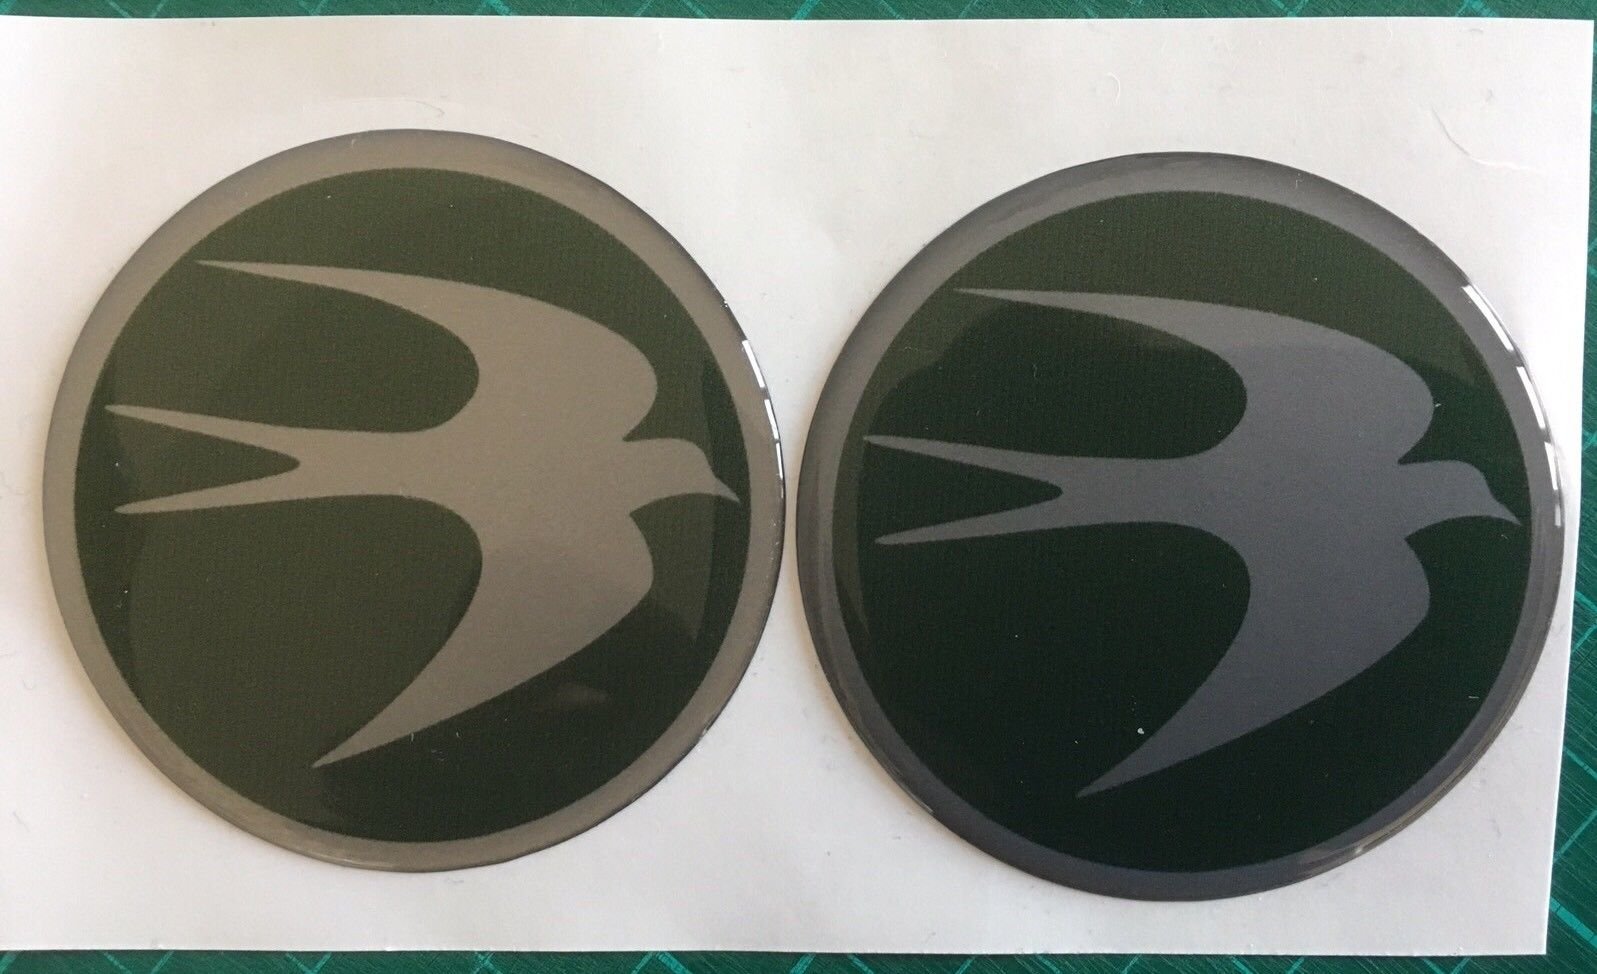 Swift Radnabenkappe für Wohnwagen, Wohnmobil, rundes Vogel-Logo, 60 mm, Grün und Silber, 2 Stück von SCOOBY DESIGNS